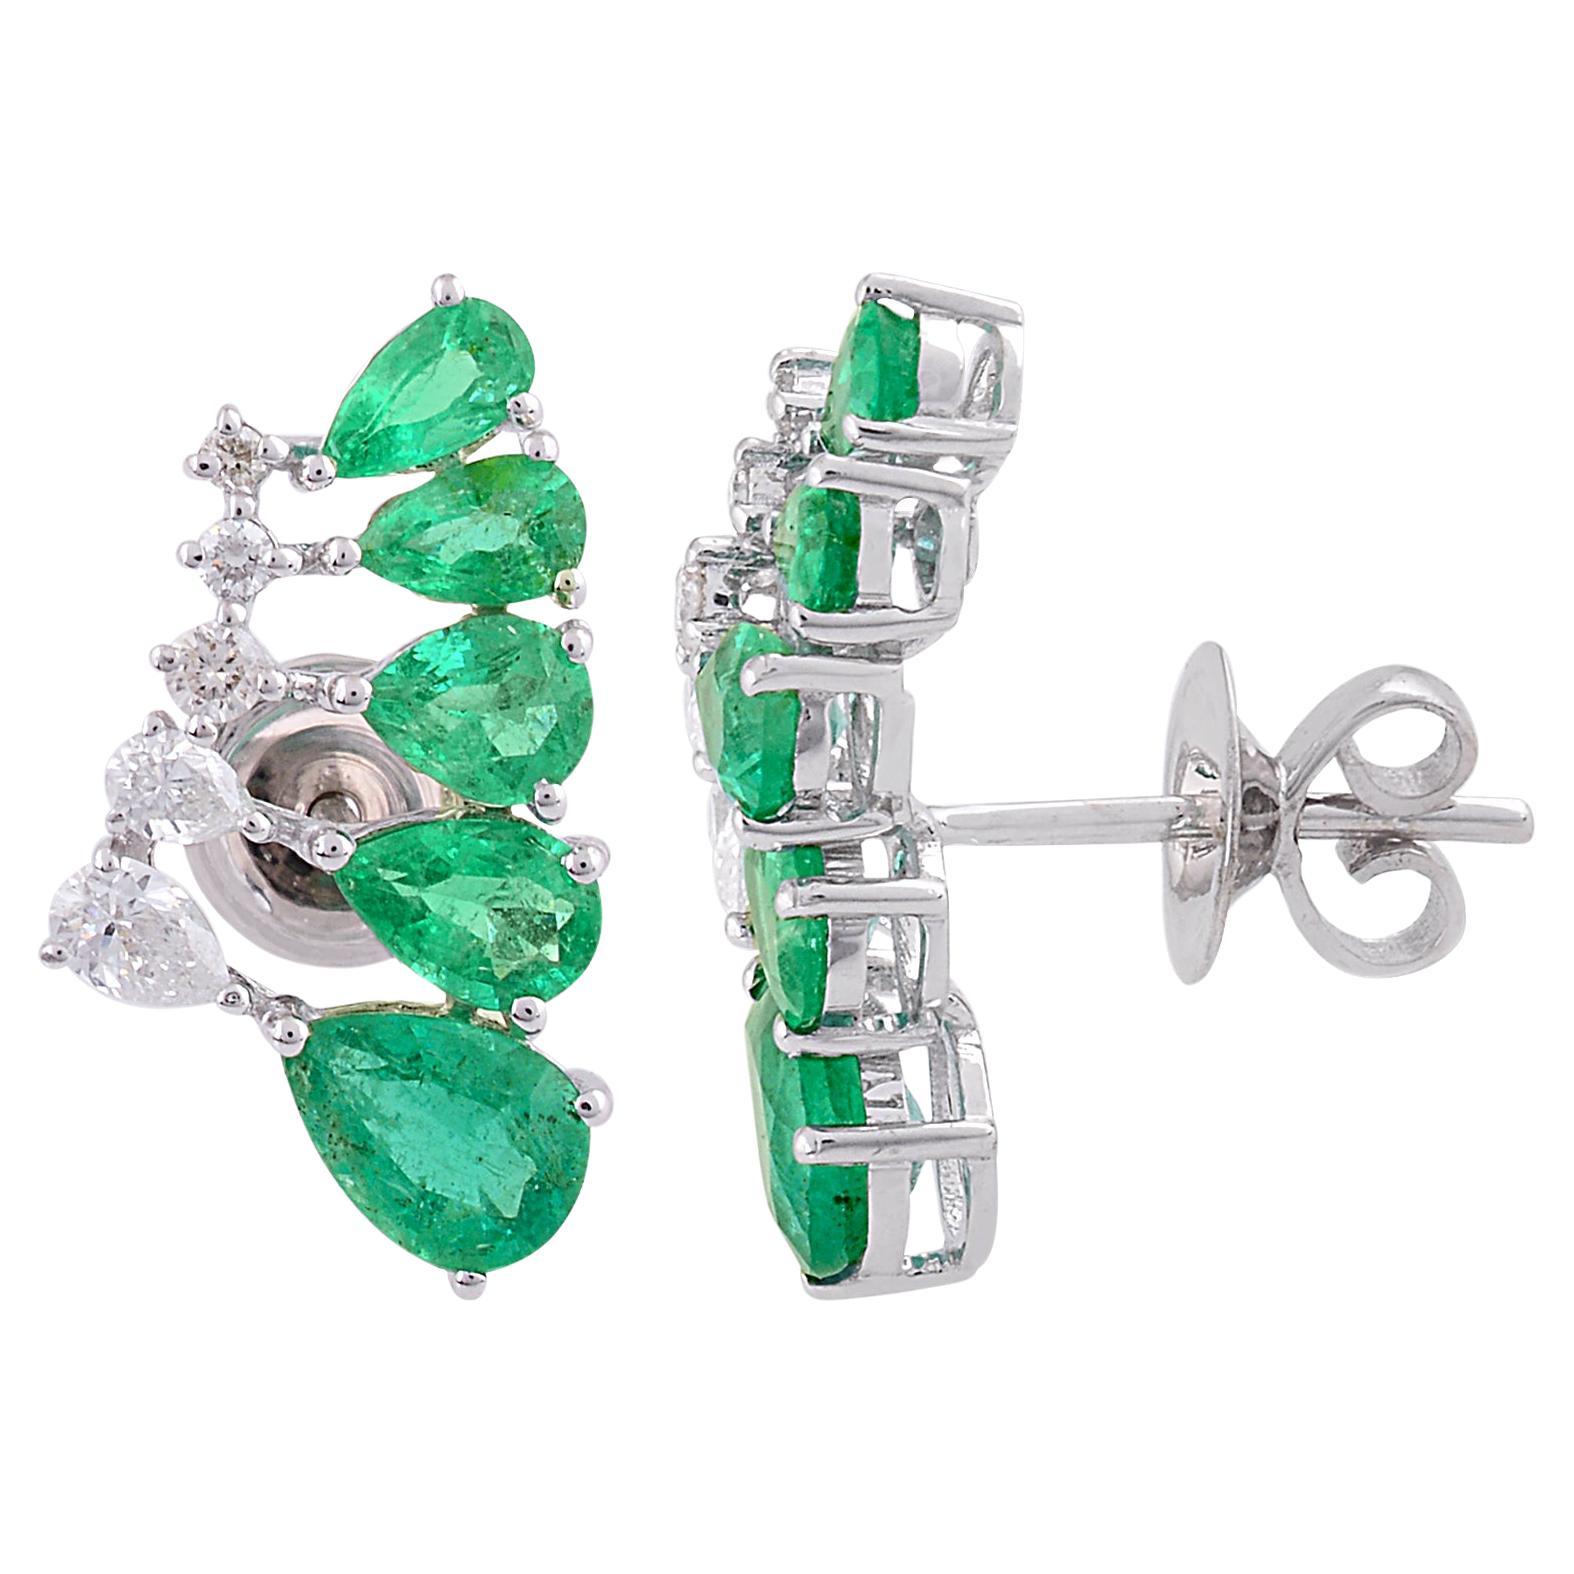 Pear Zambian Emerald Gemstone Earrings Diamond 18 Karat White Gold Fine Jewelry